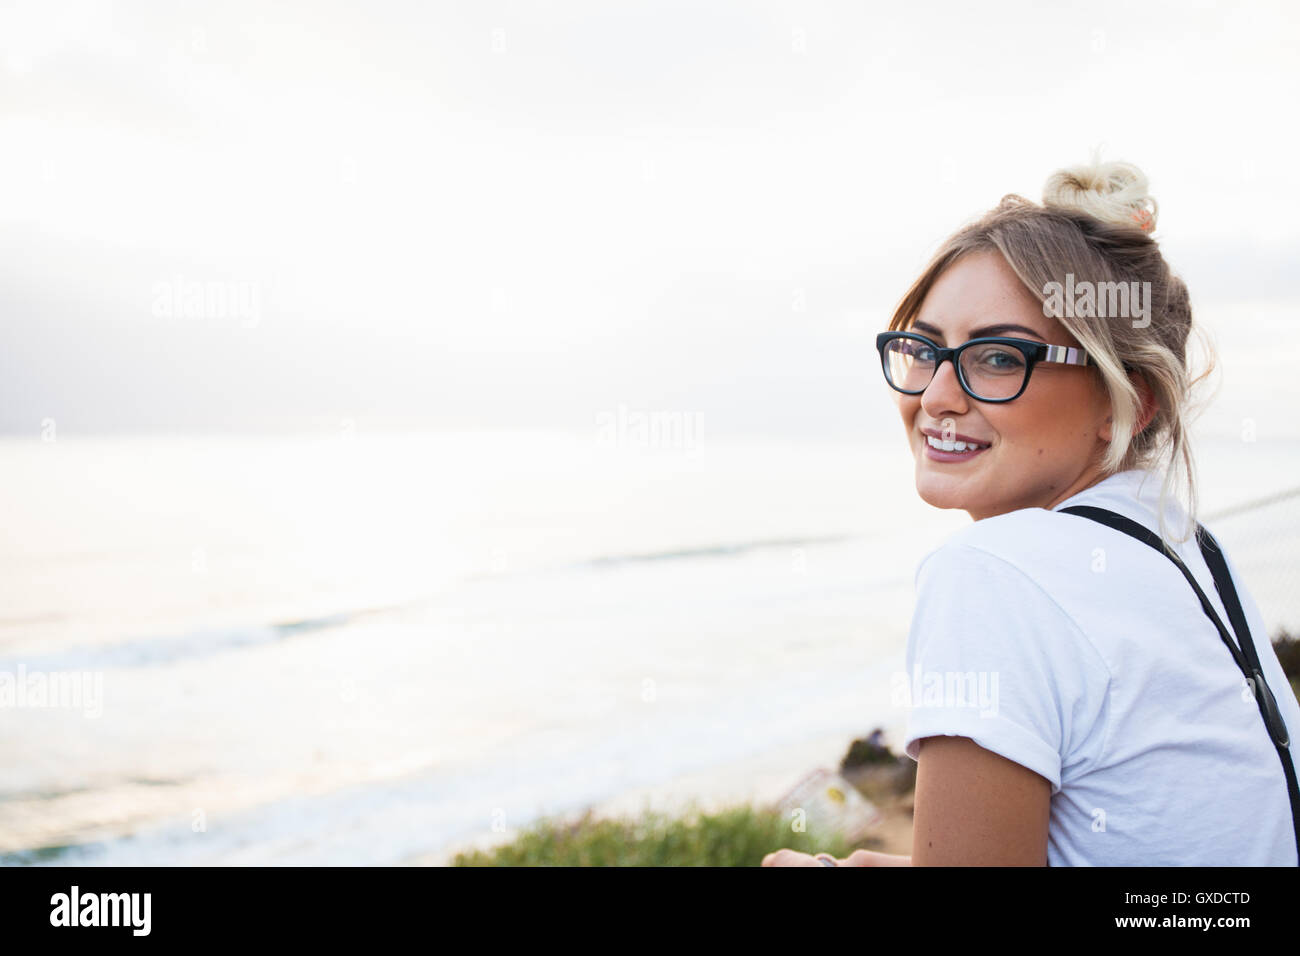 Frau vom Ozean auf der Suche über die Schulter in die Kamera Lächeln, Encinitas, Kalifornien, USA Stockfoto